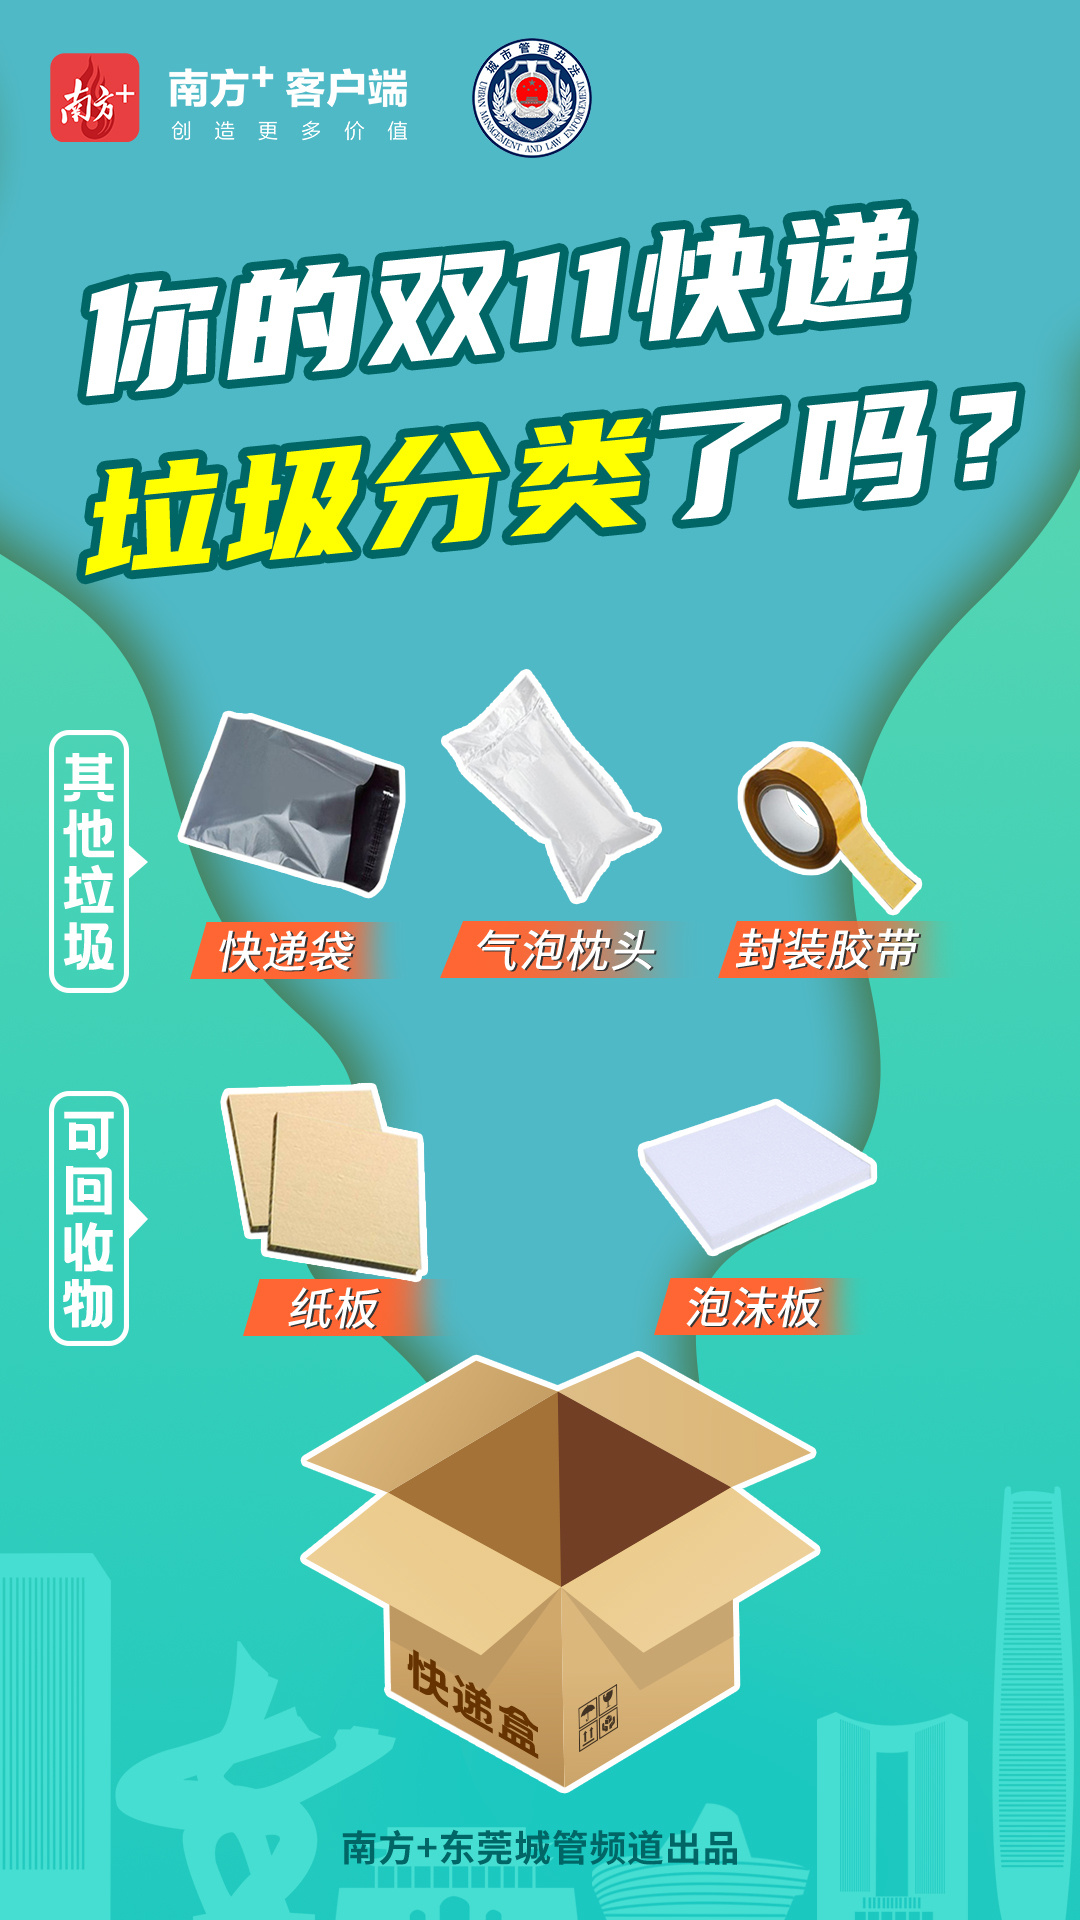 2019 中国快递包装废弃物回收研究报告 | 【快递行业报告】 - 知乎